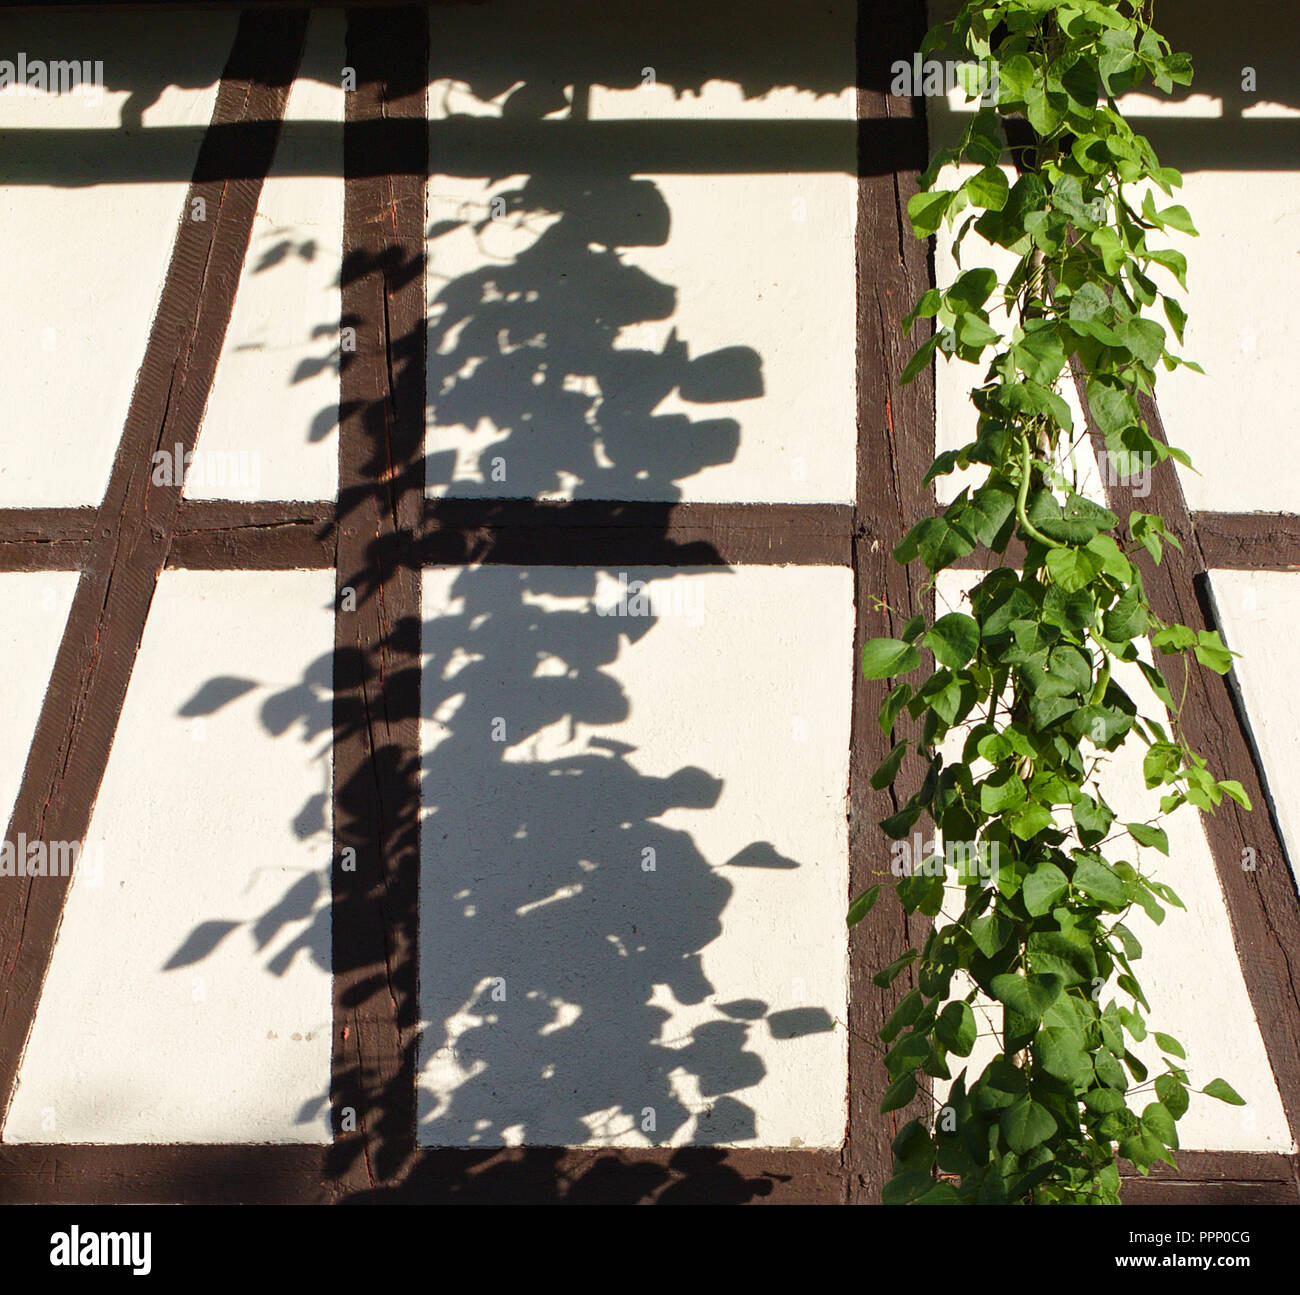 Viticci verde illuminato dal sole di sera cast un vivace ombra su un bianco a struttura mista in legno e muratura della parete edilizia Foto Stock